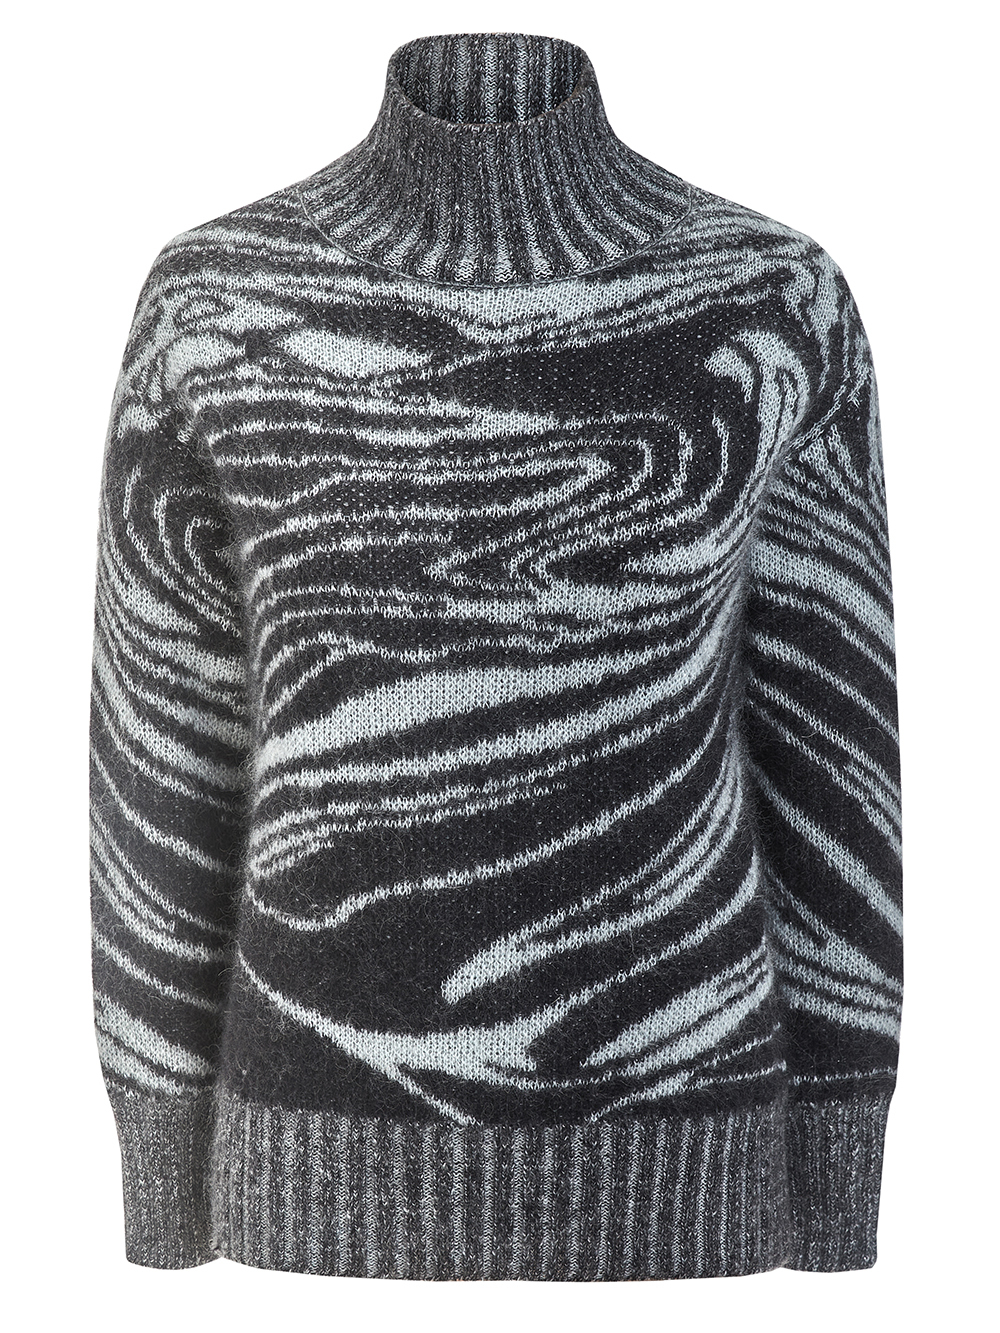 Женский свитер черного цвета из мохера